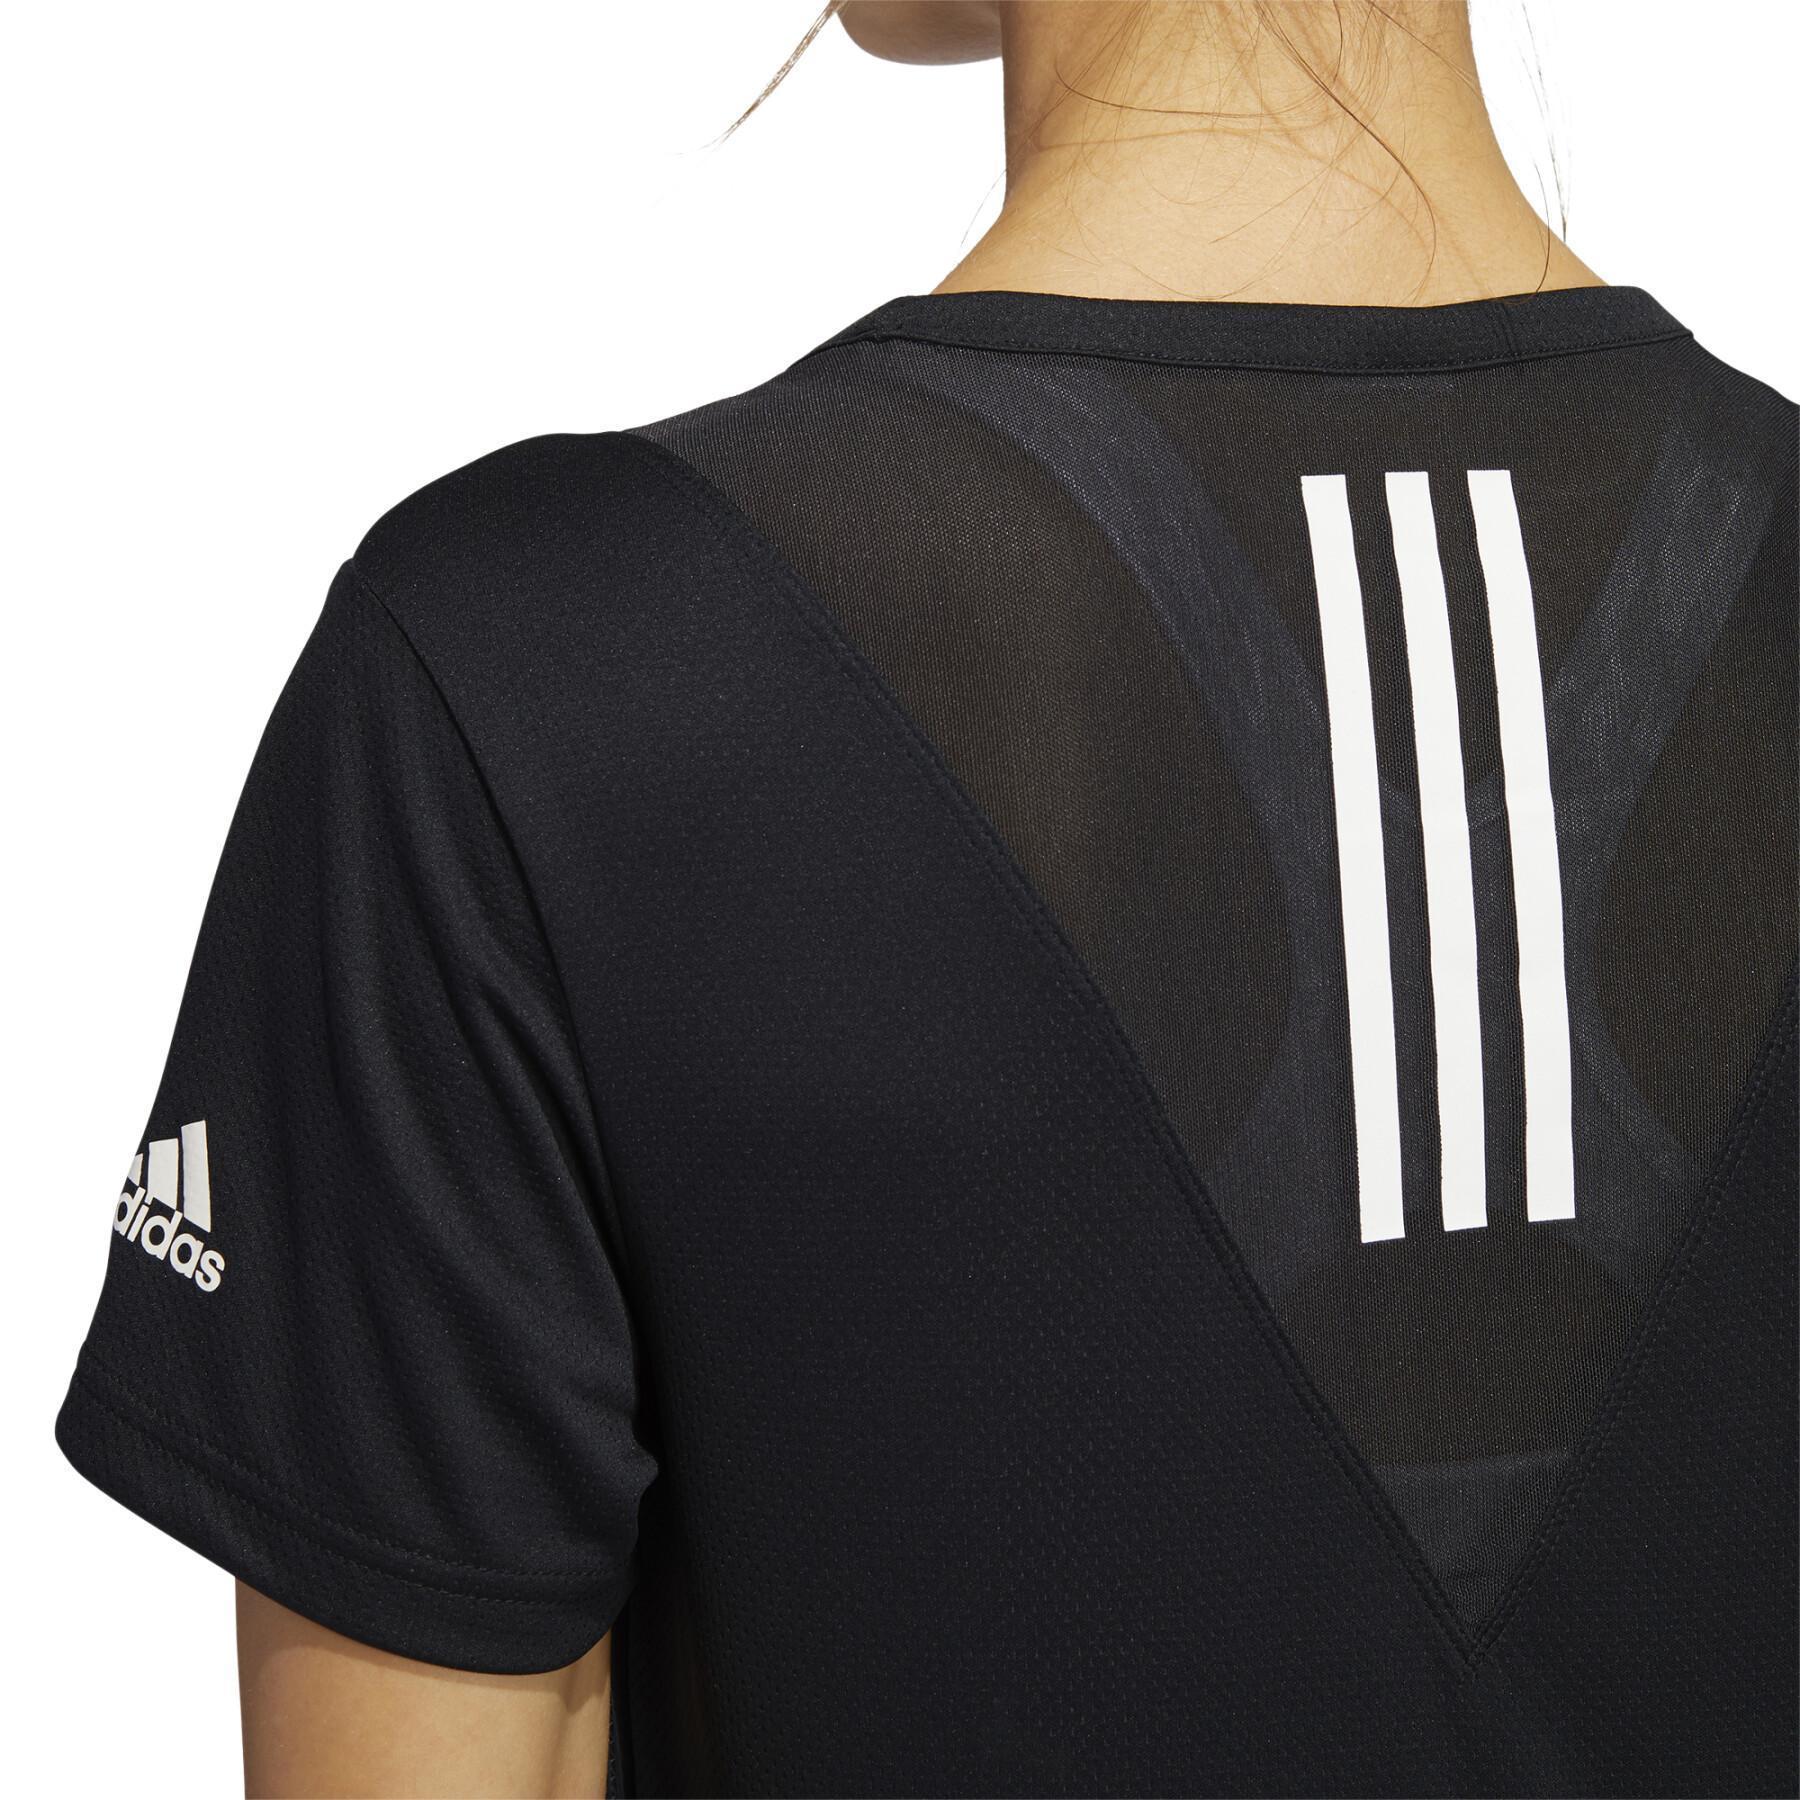 T-shirt för kvinnor adidas Training 3-StripesHeat Ready